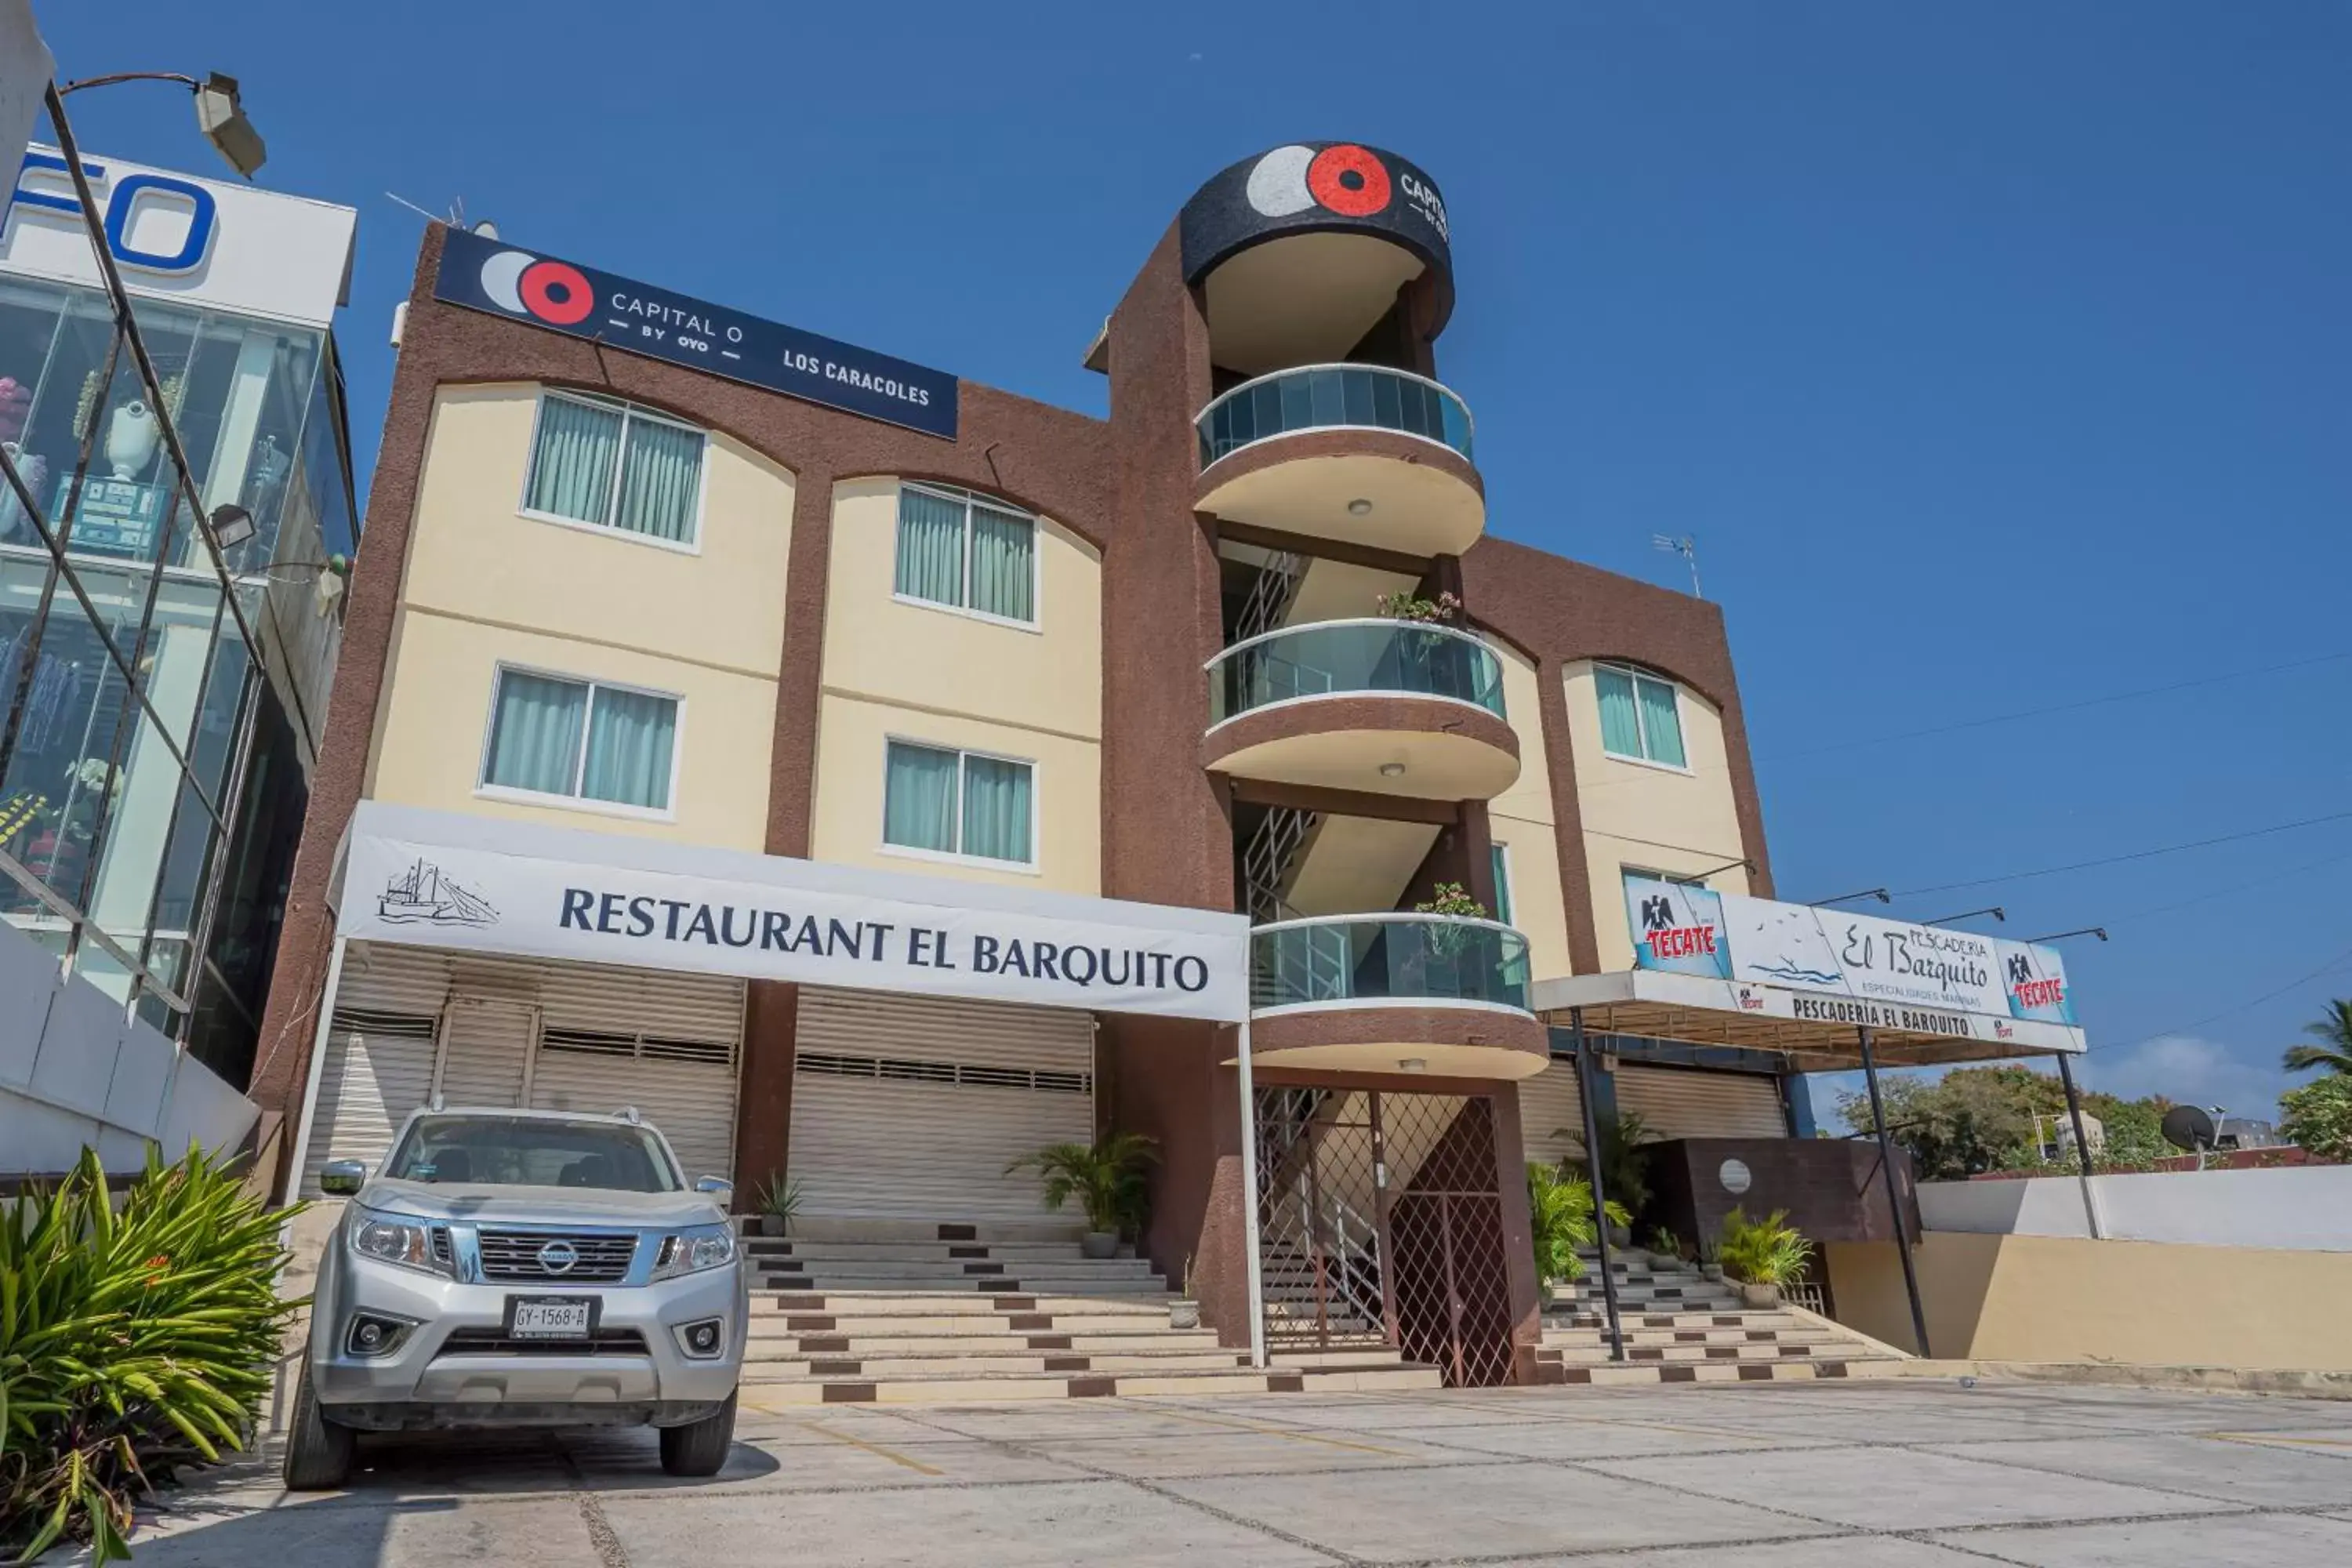 Facade/entrance, Property Building in Capital O Hotel Los Caracoles, Acapulco